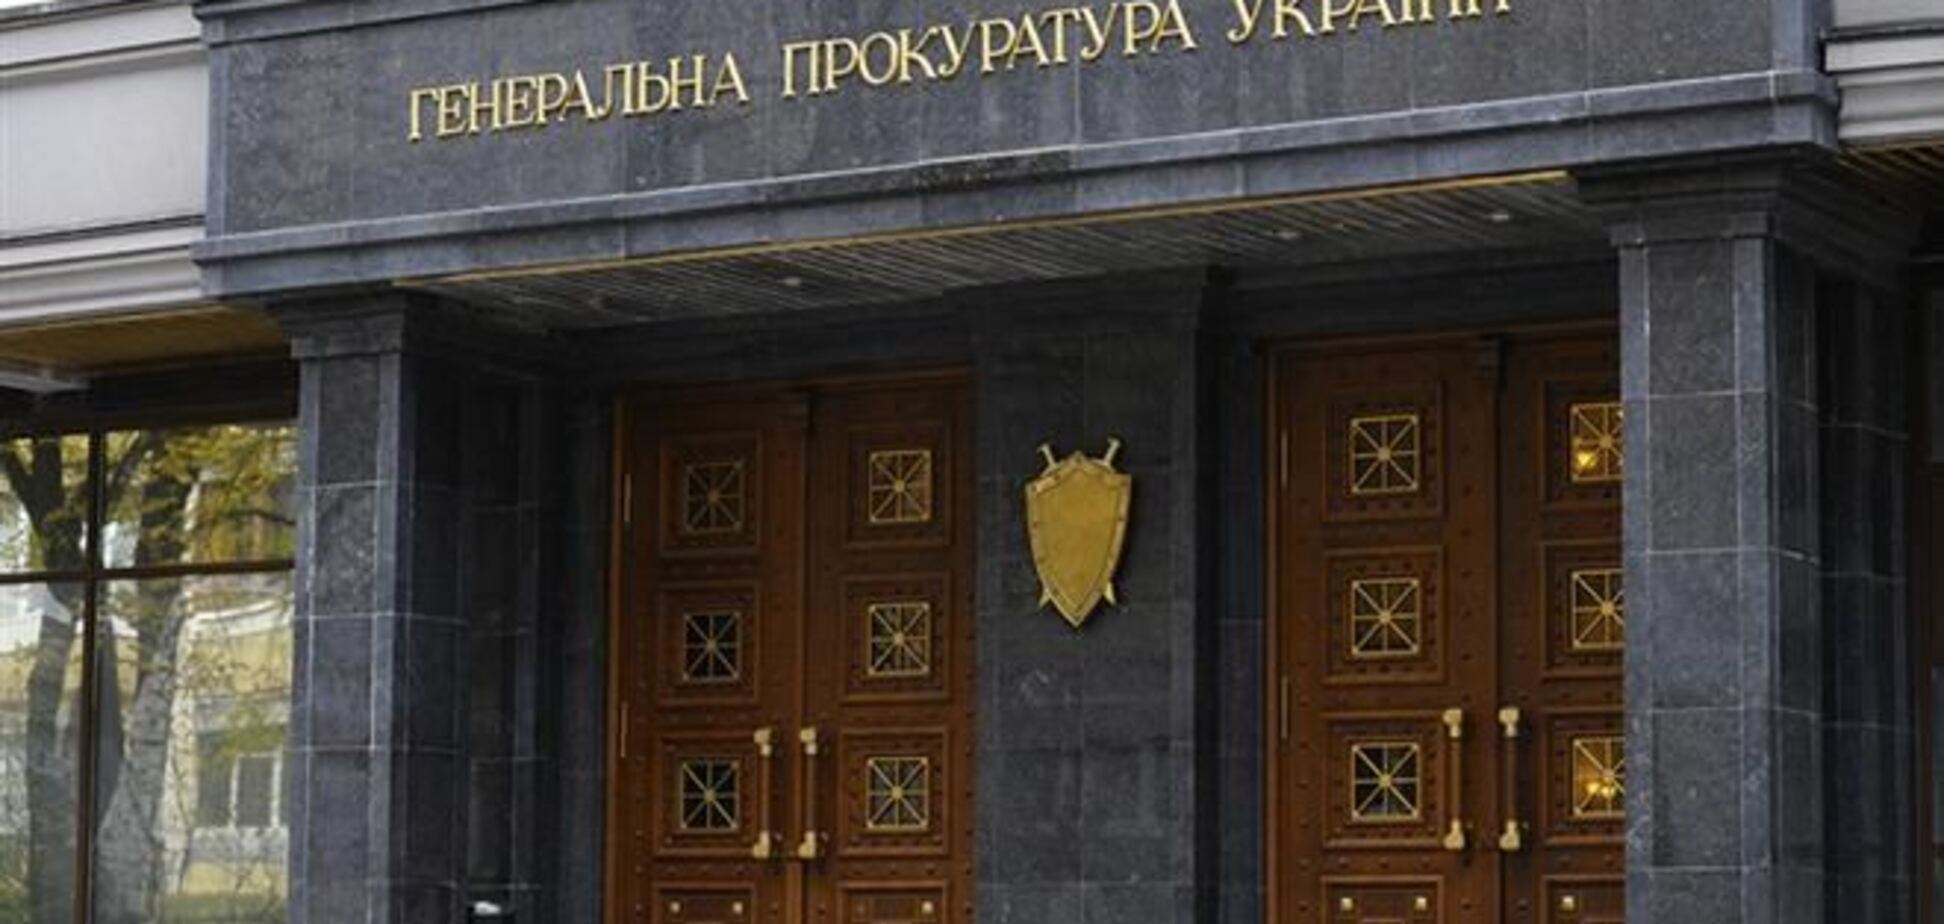 И.о. генпрокурора уволил всех прокуроров областного уровня